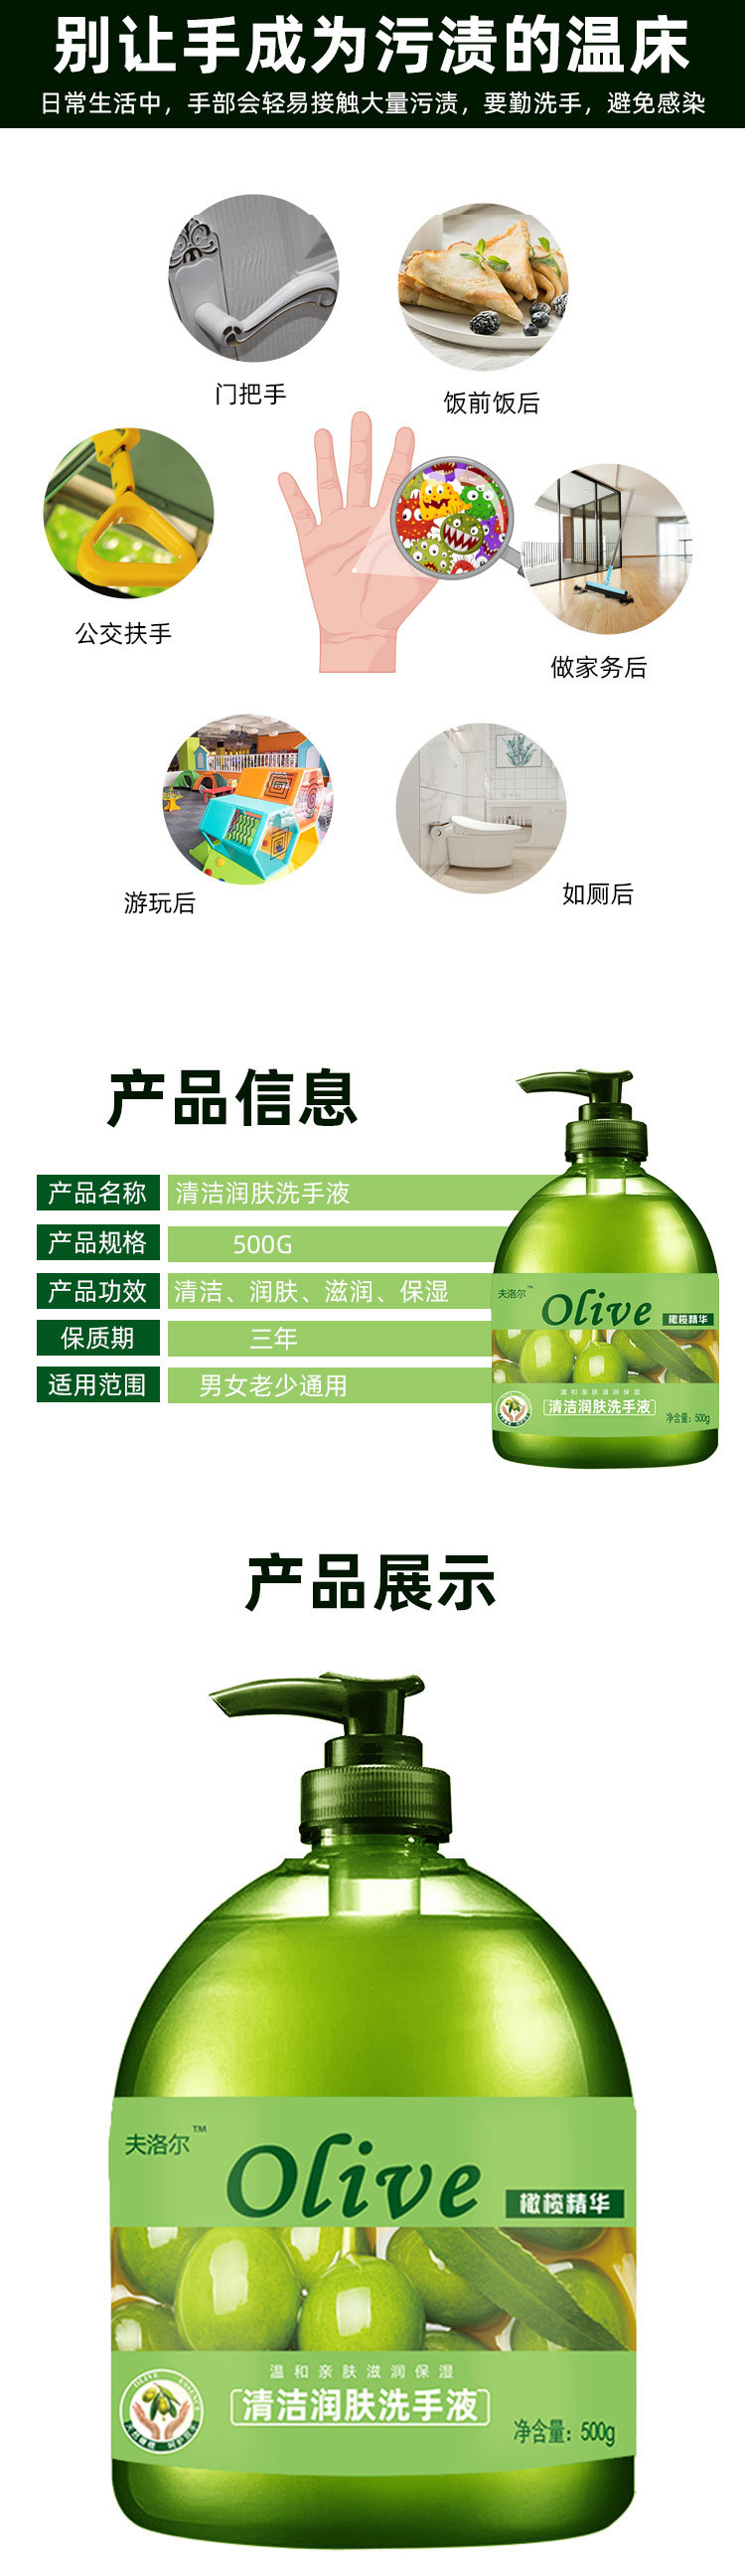 厂家批发500ml瓶装橄榄洗手液芦荟香型可选活动劳保家庭清洁详情4